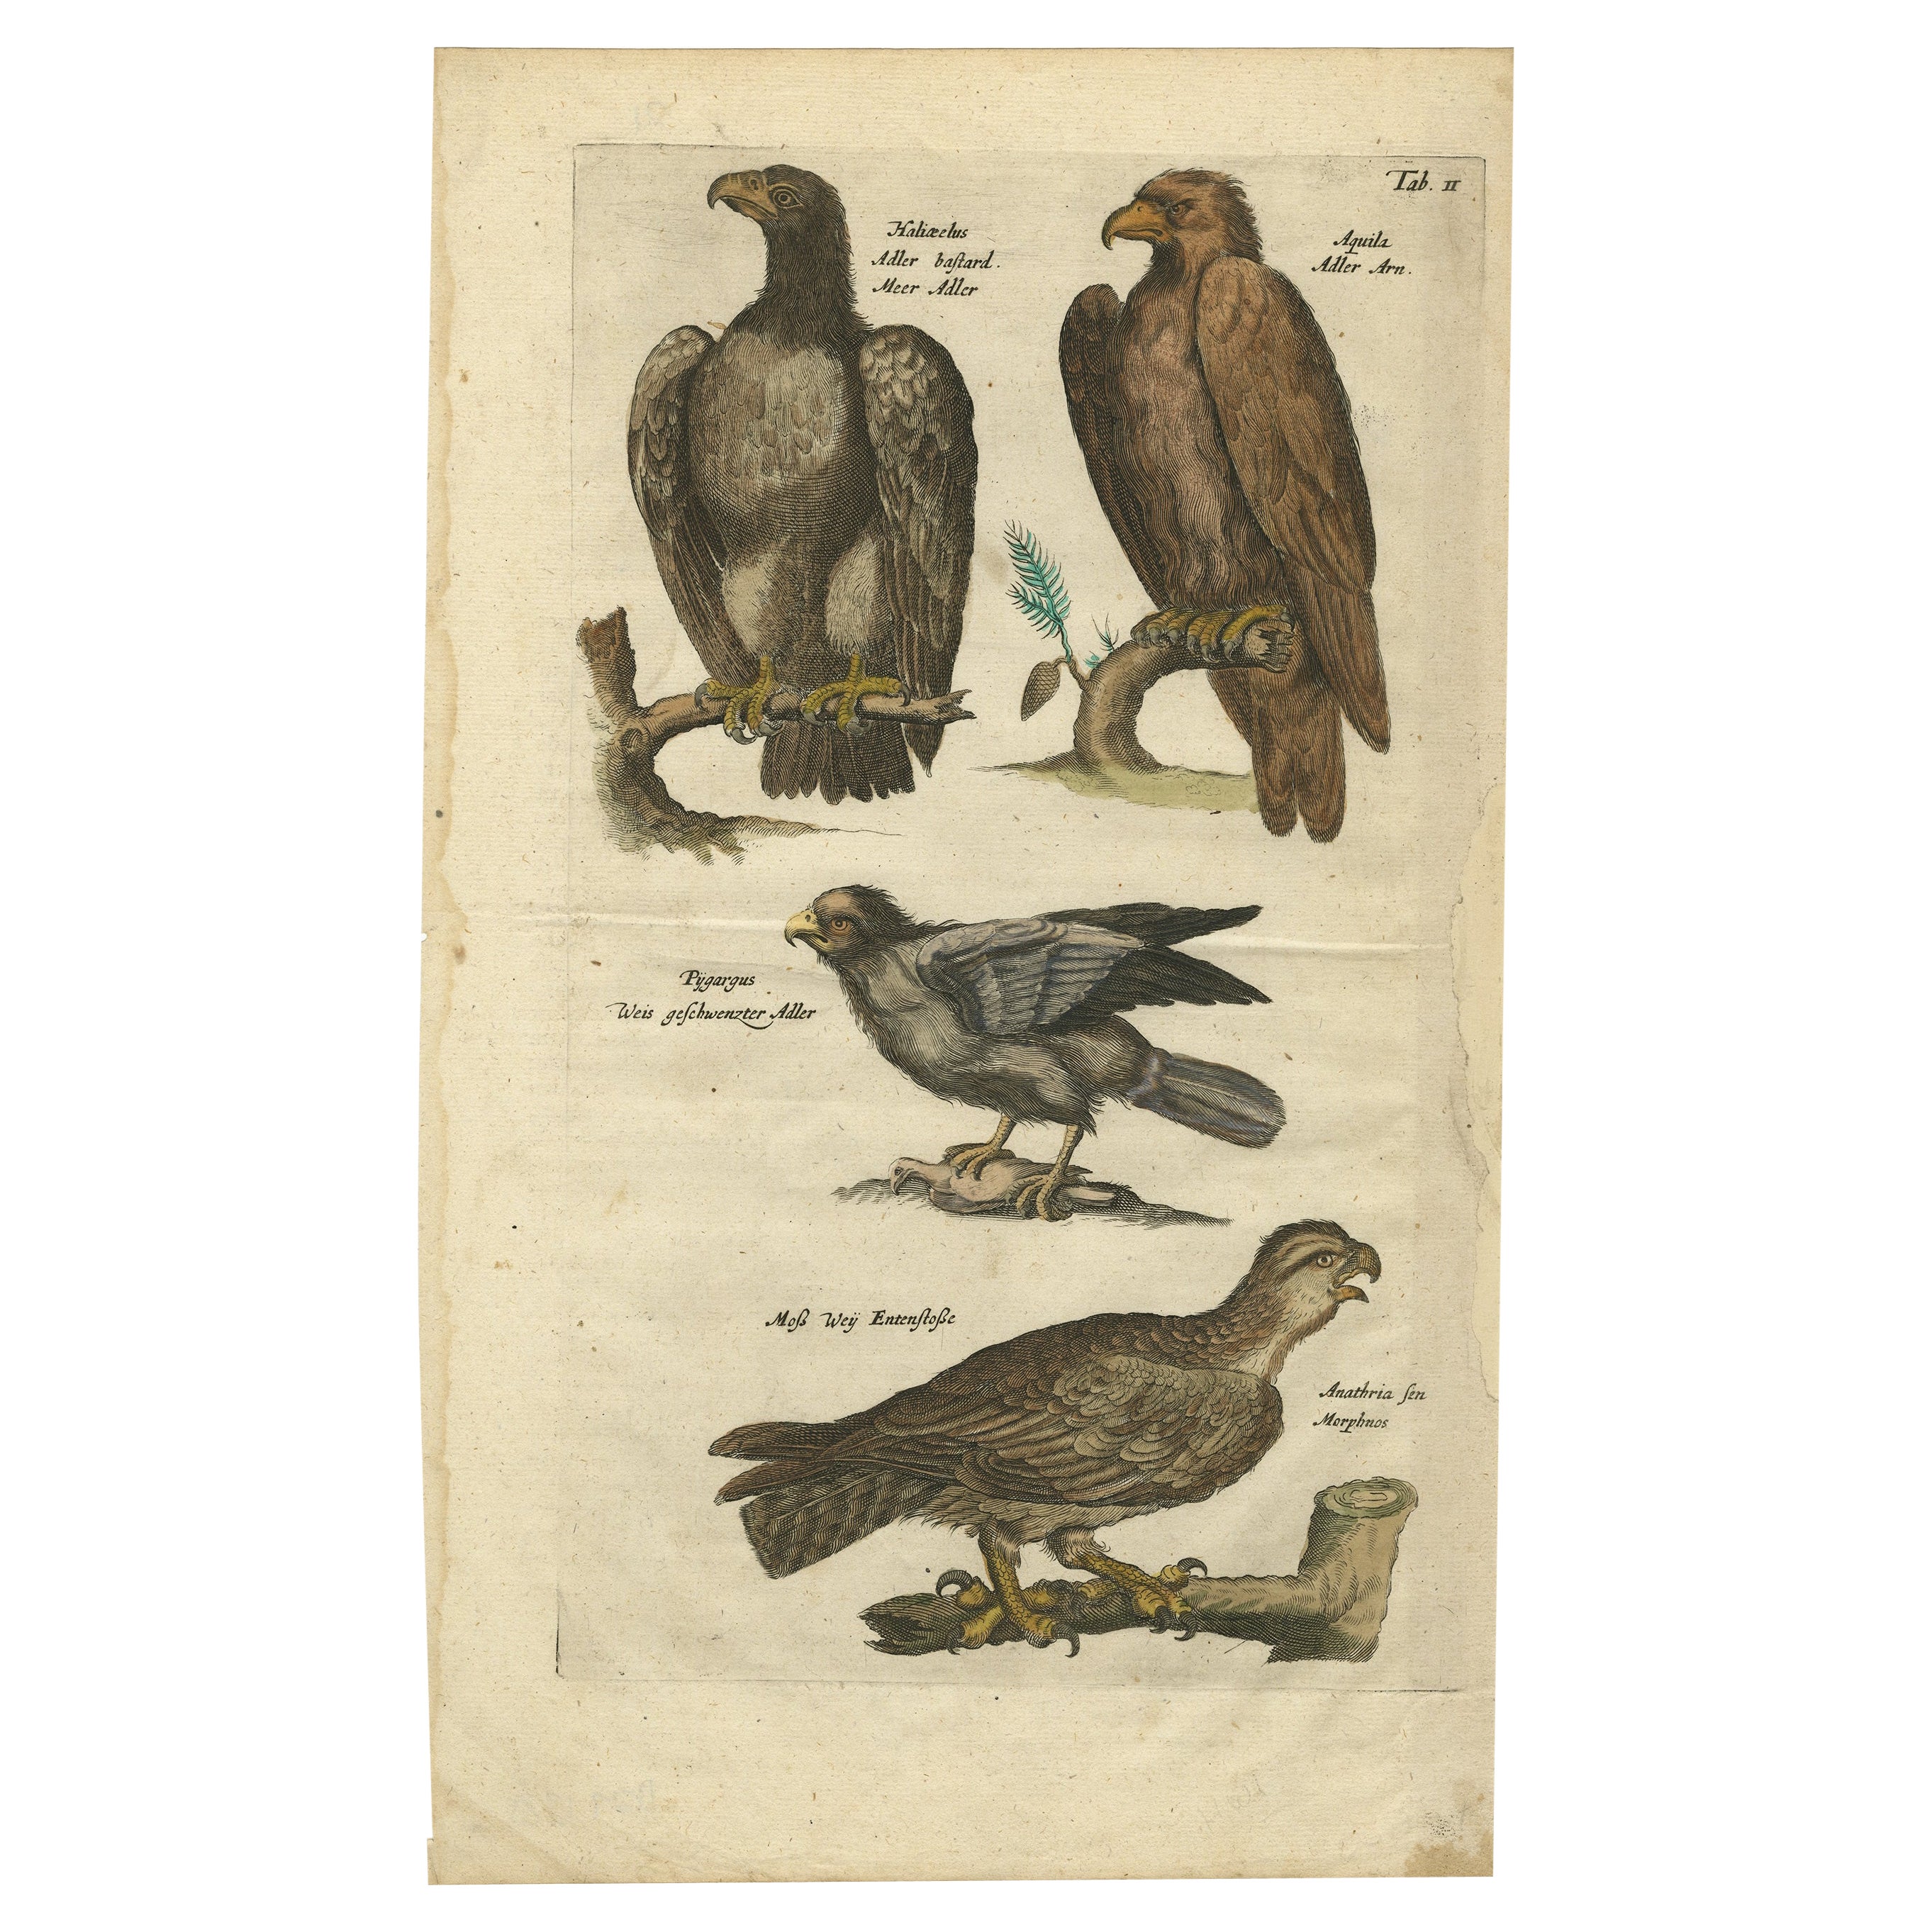 Originaler antiker Kupferstich von diversen Raubvögeln, wie Adler und Kornweihe, 1657